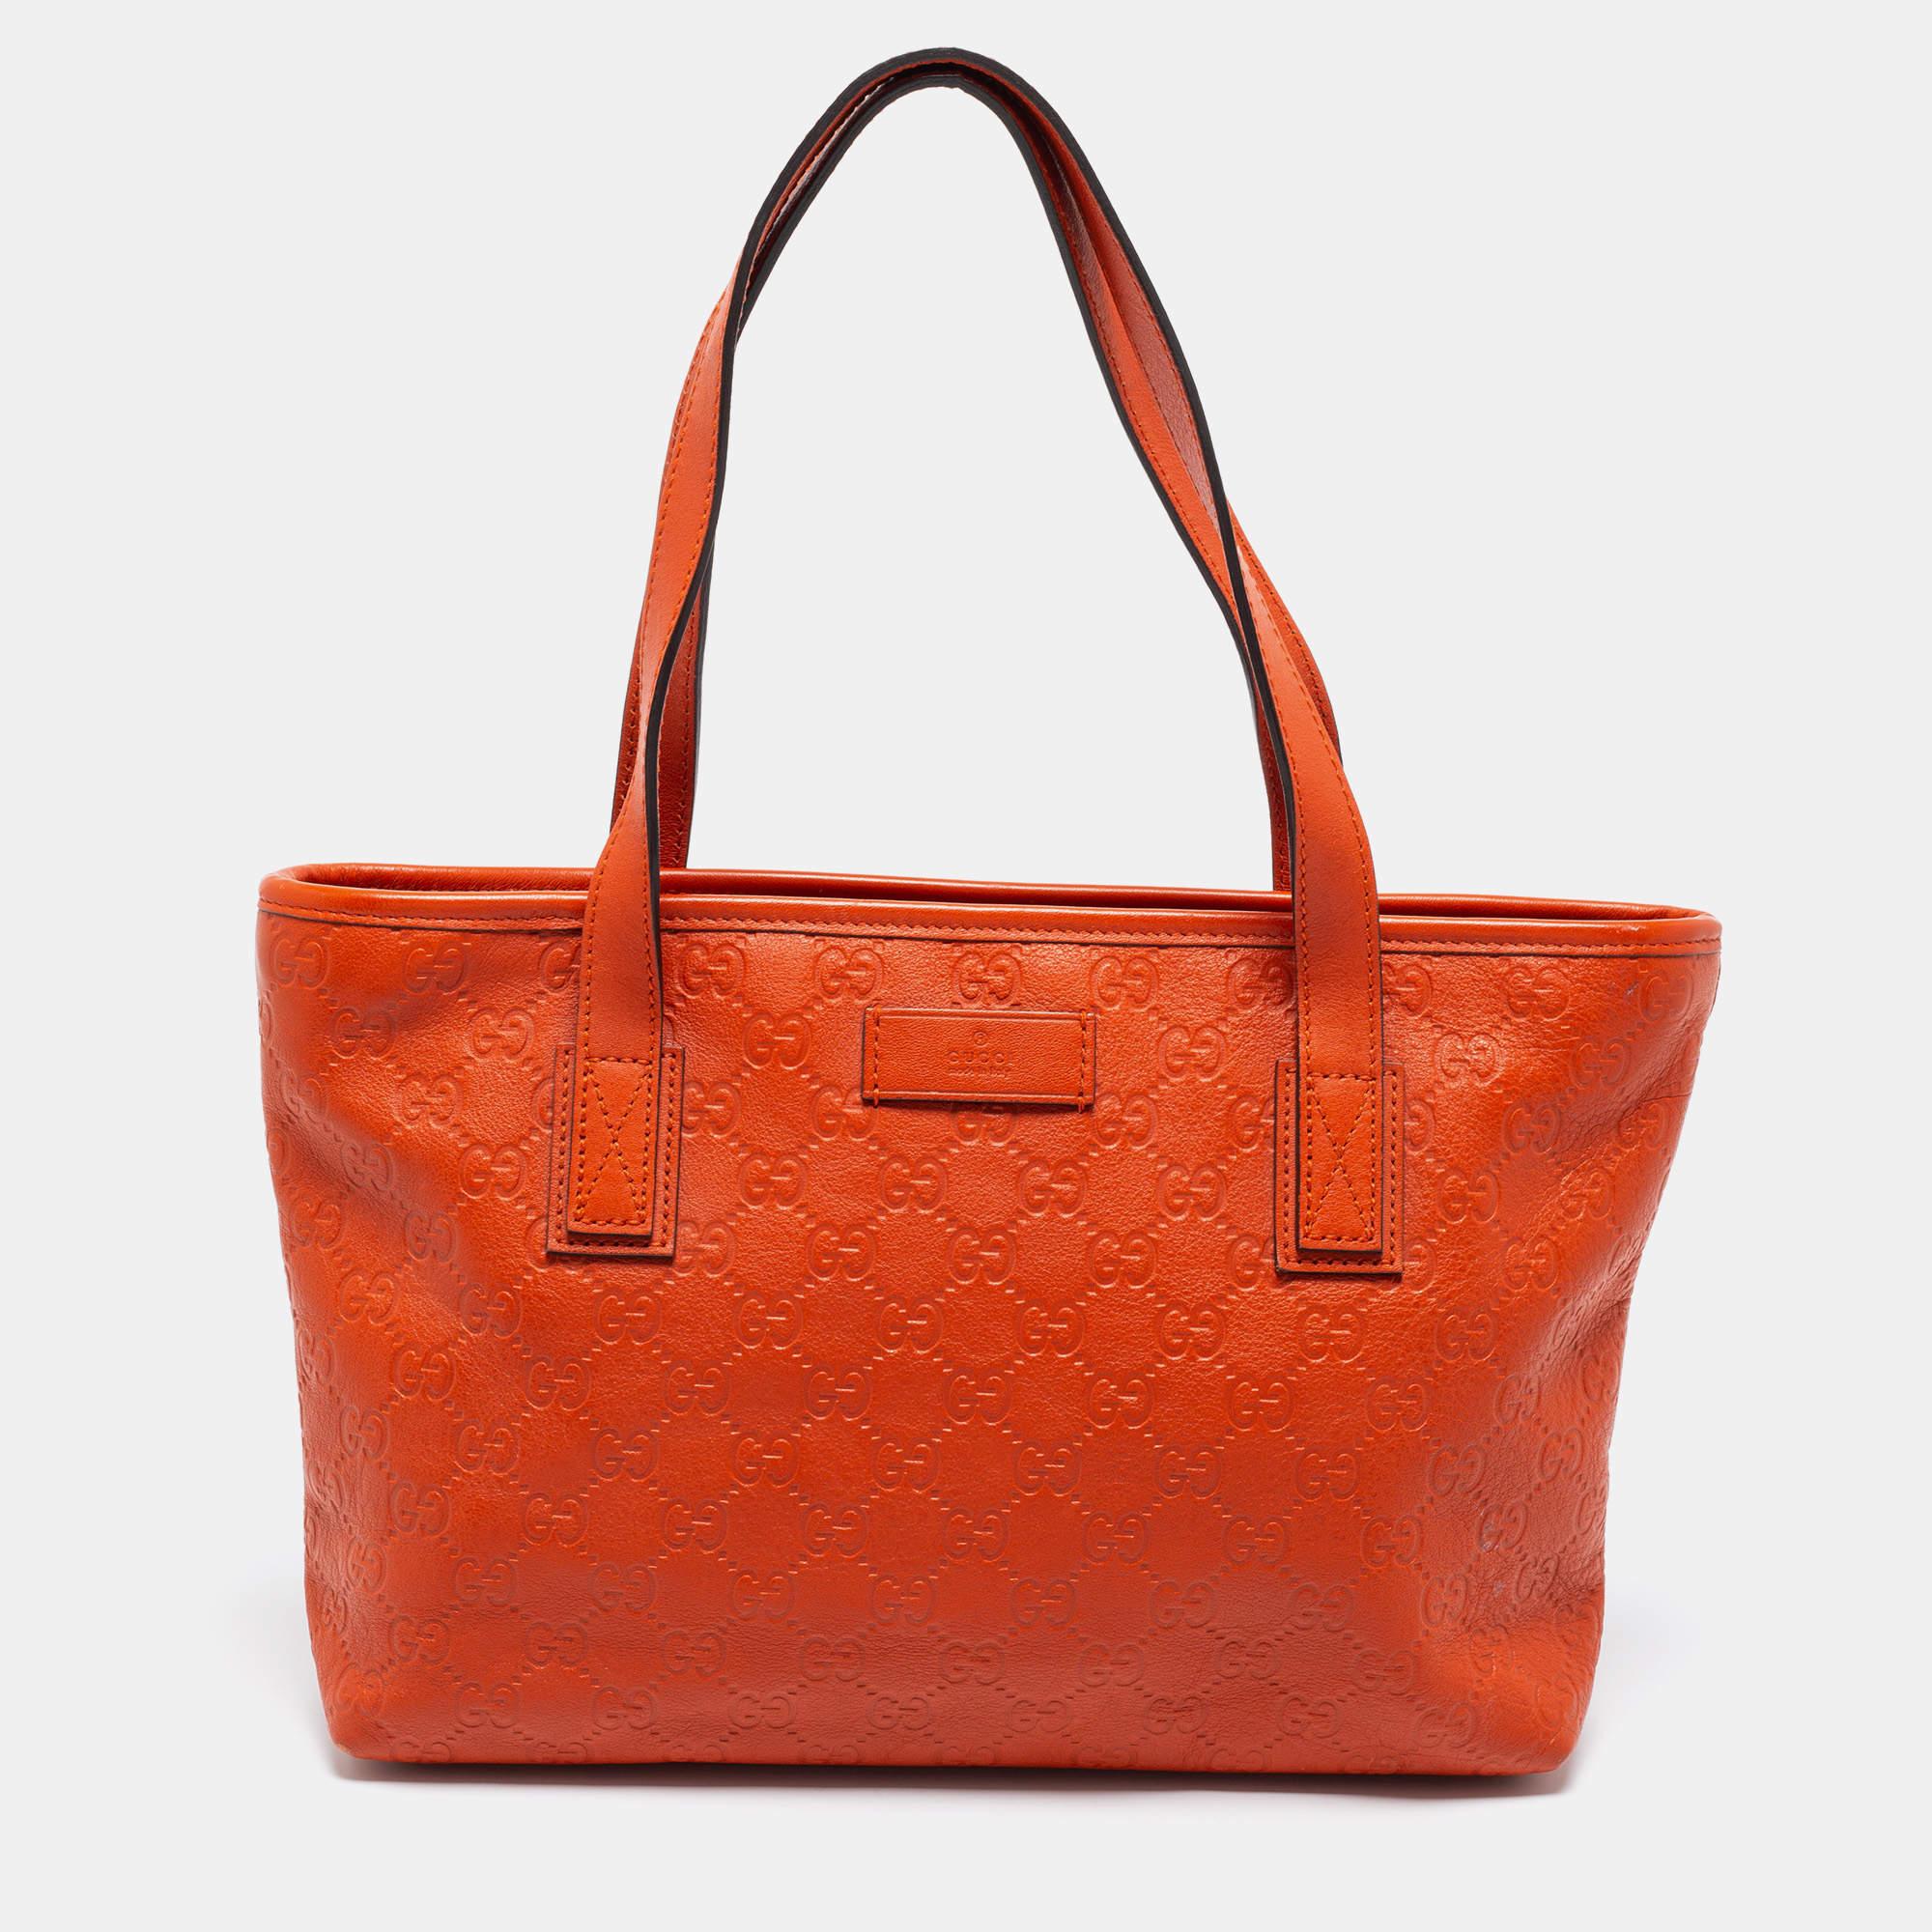 Gucci Orange Guccissima Leather Small Shopper Tote 2